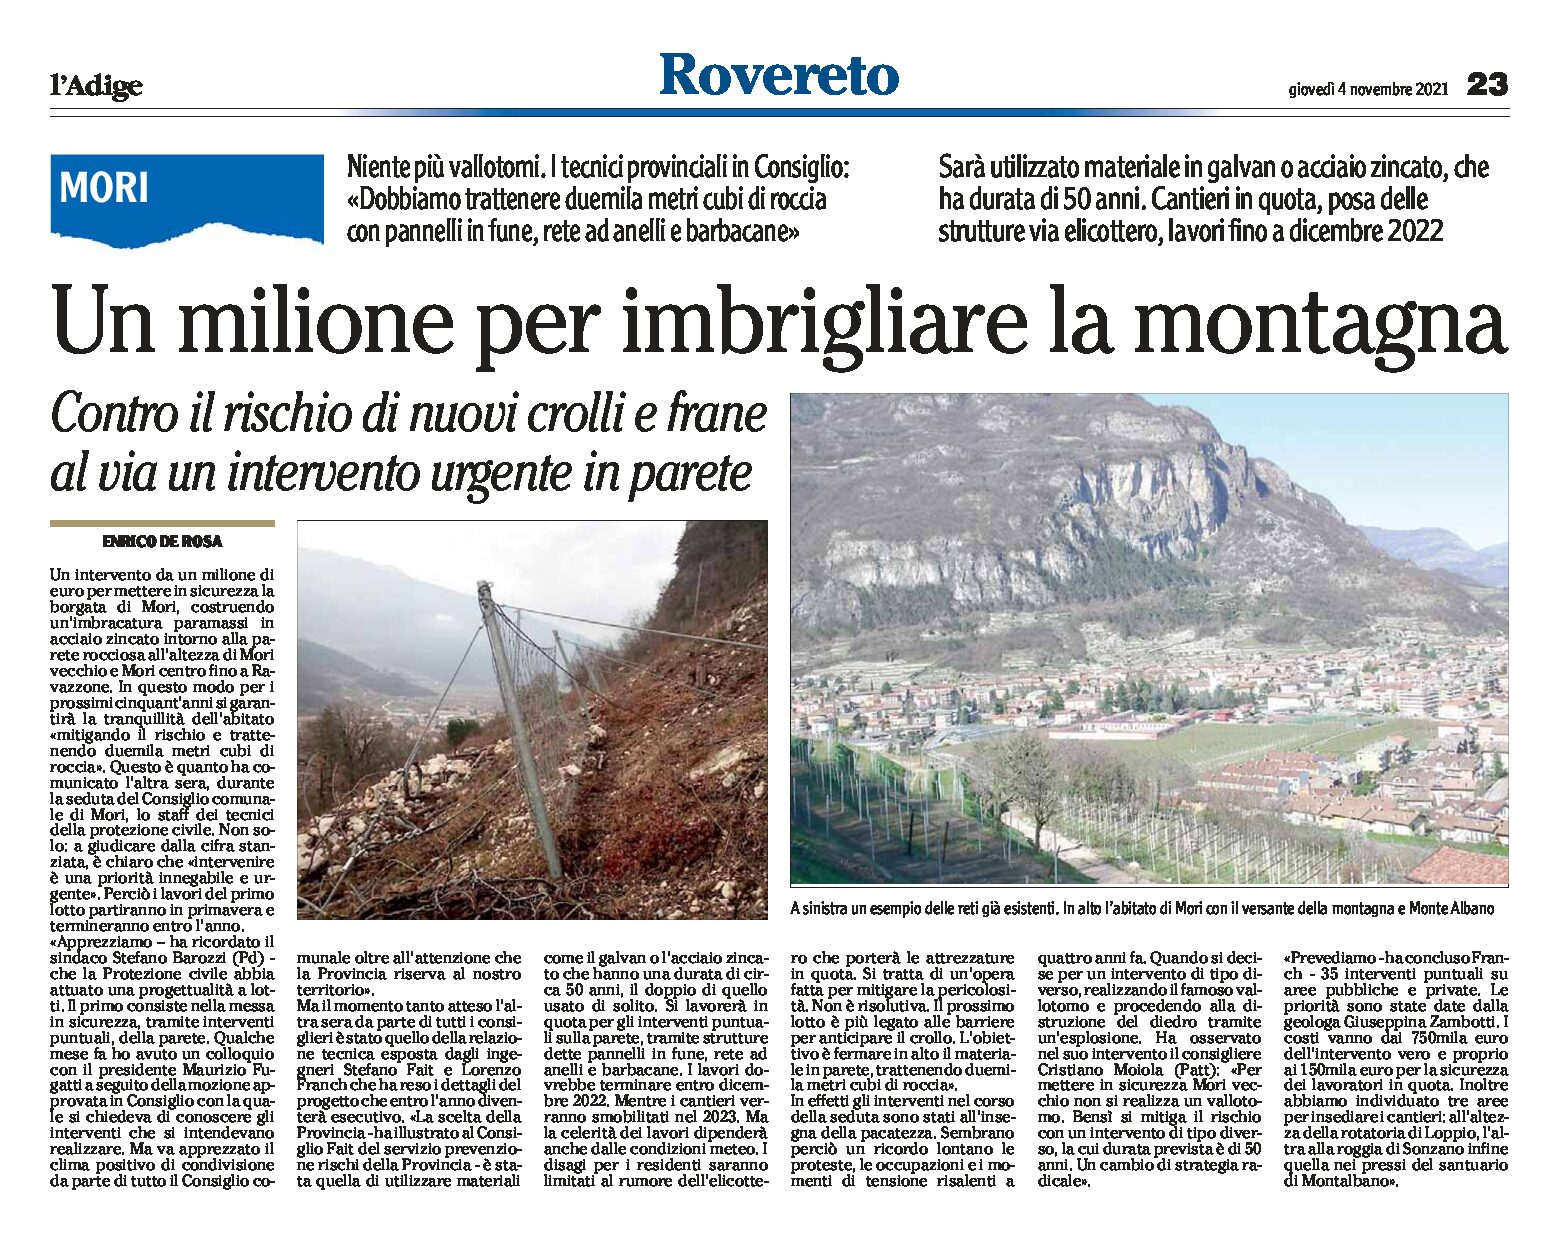 Mori: un milione per imbrigliare la montagna, contro il rischio di nuovi crolli